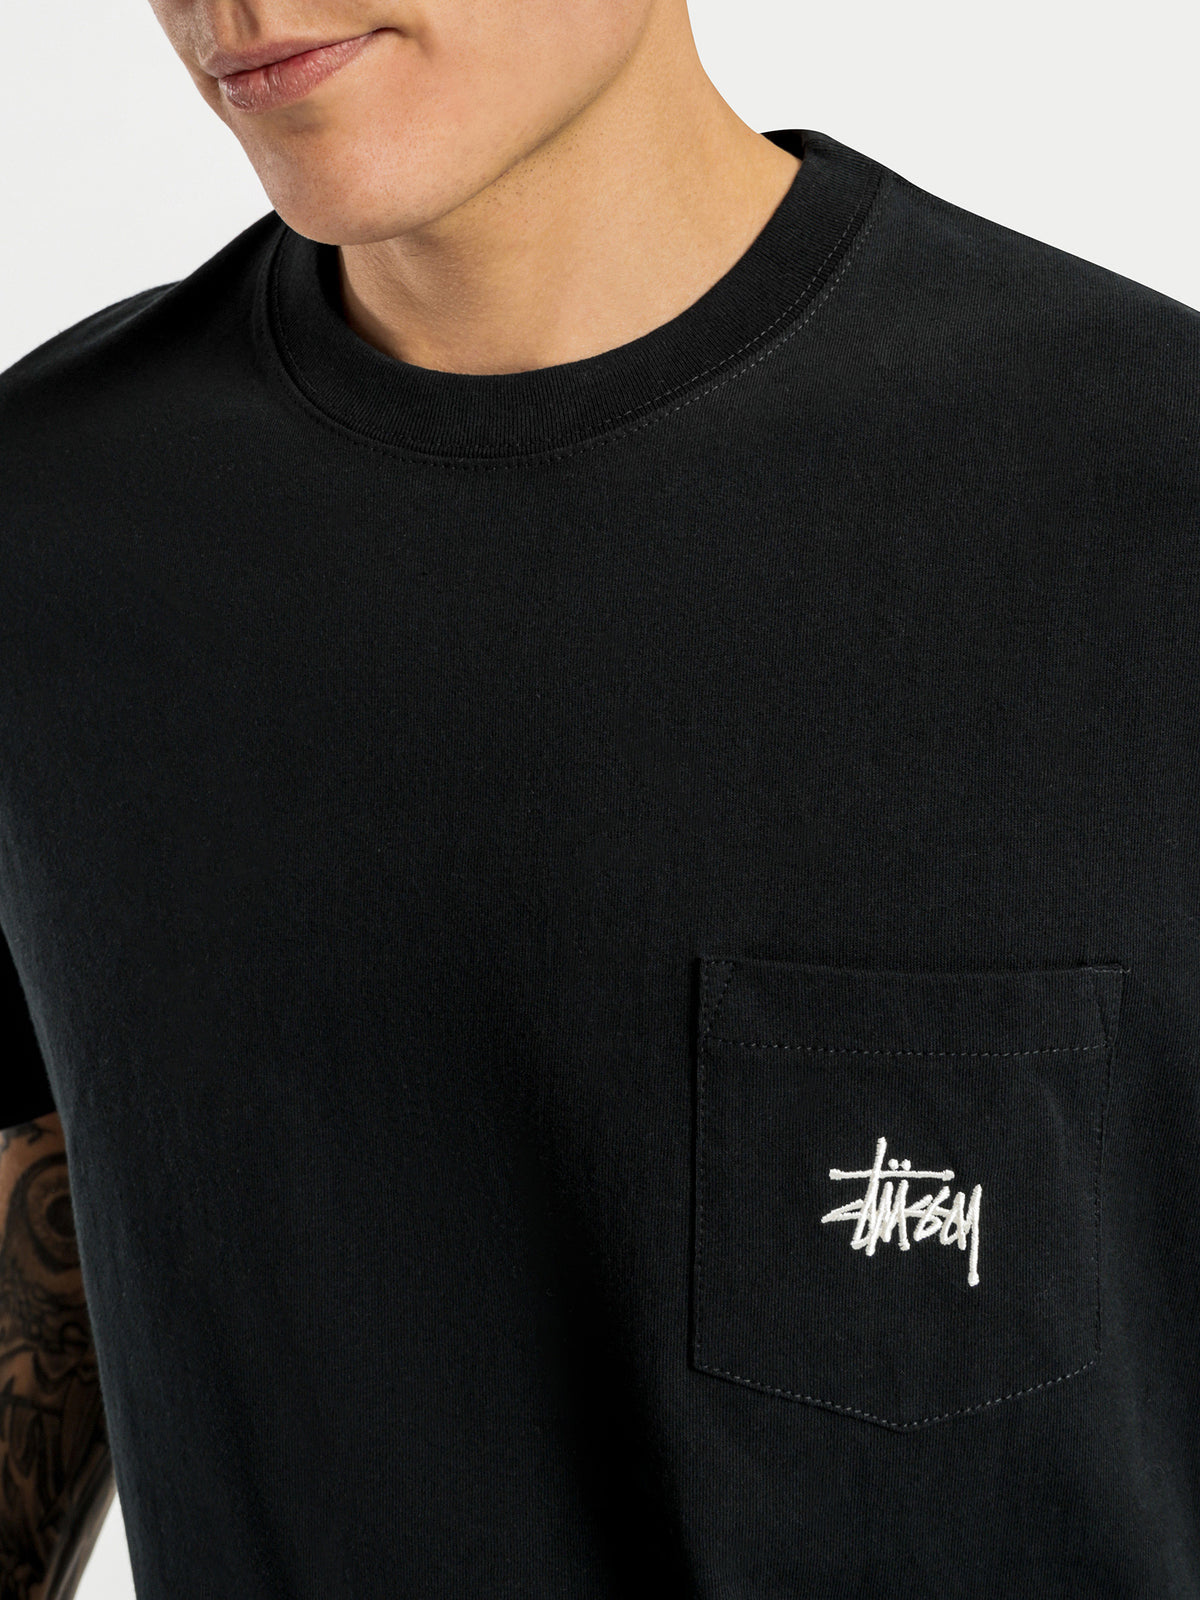 Graffiti Pocket Short Sleeve T-Shirt in Black